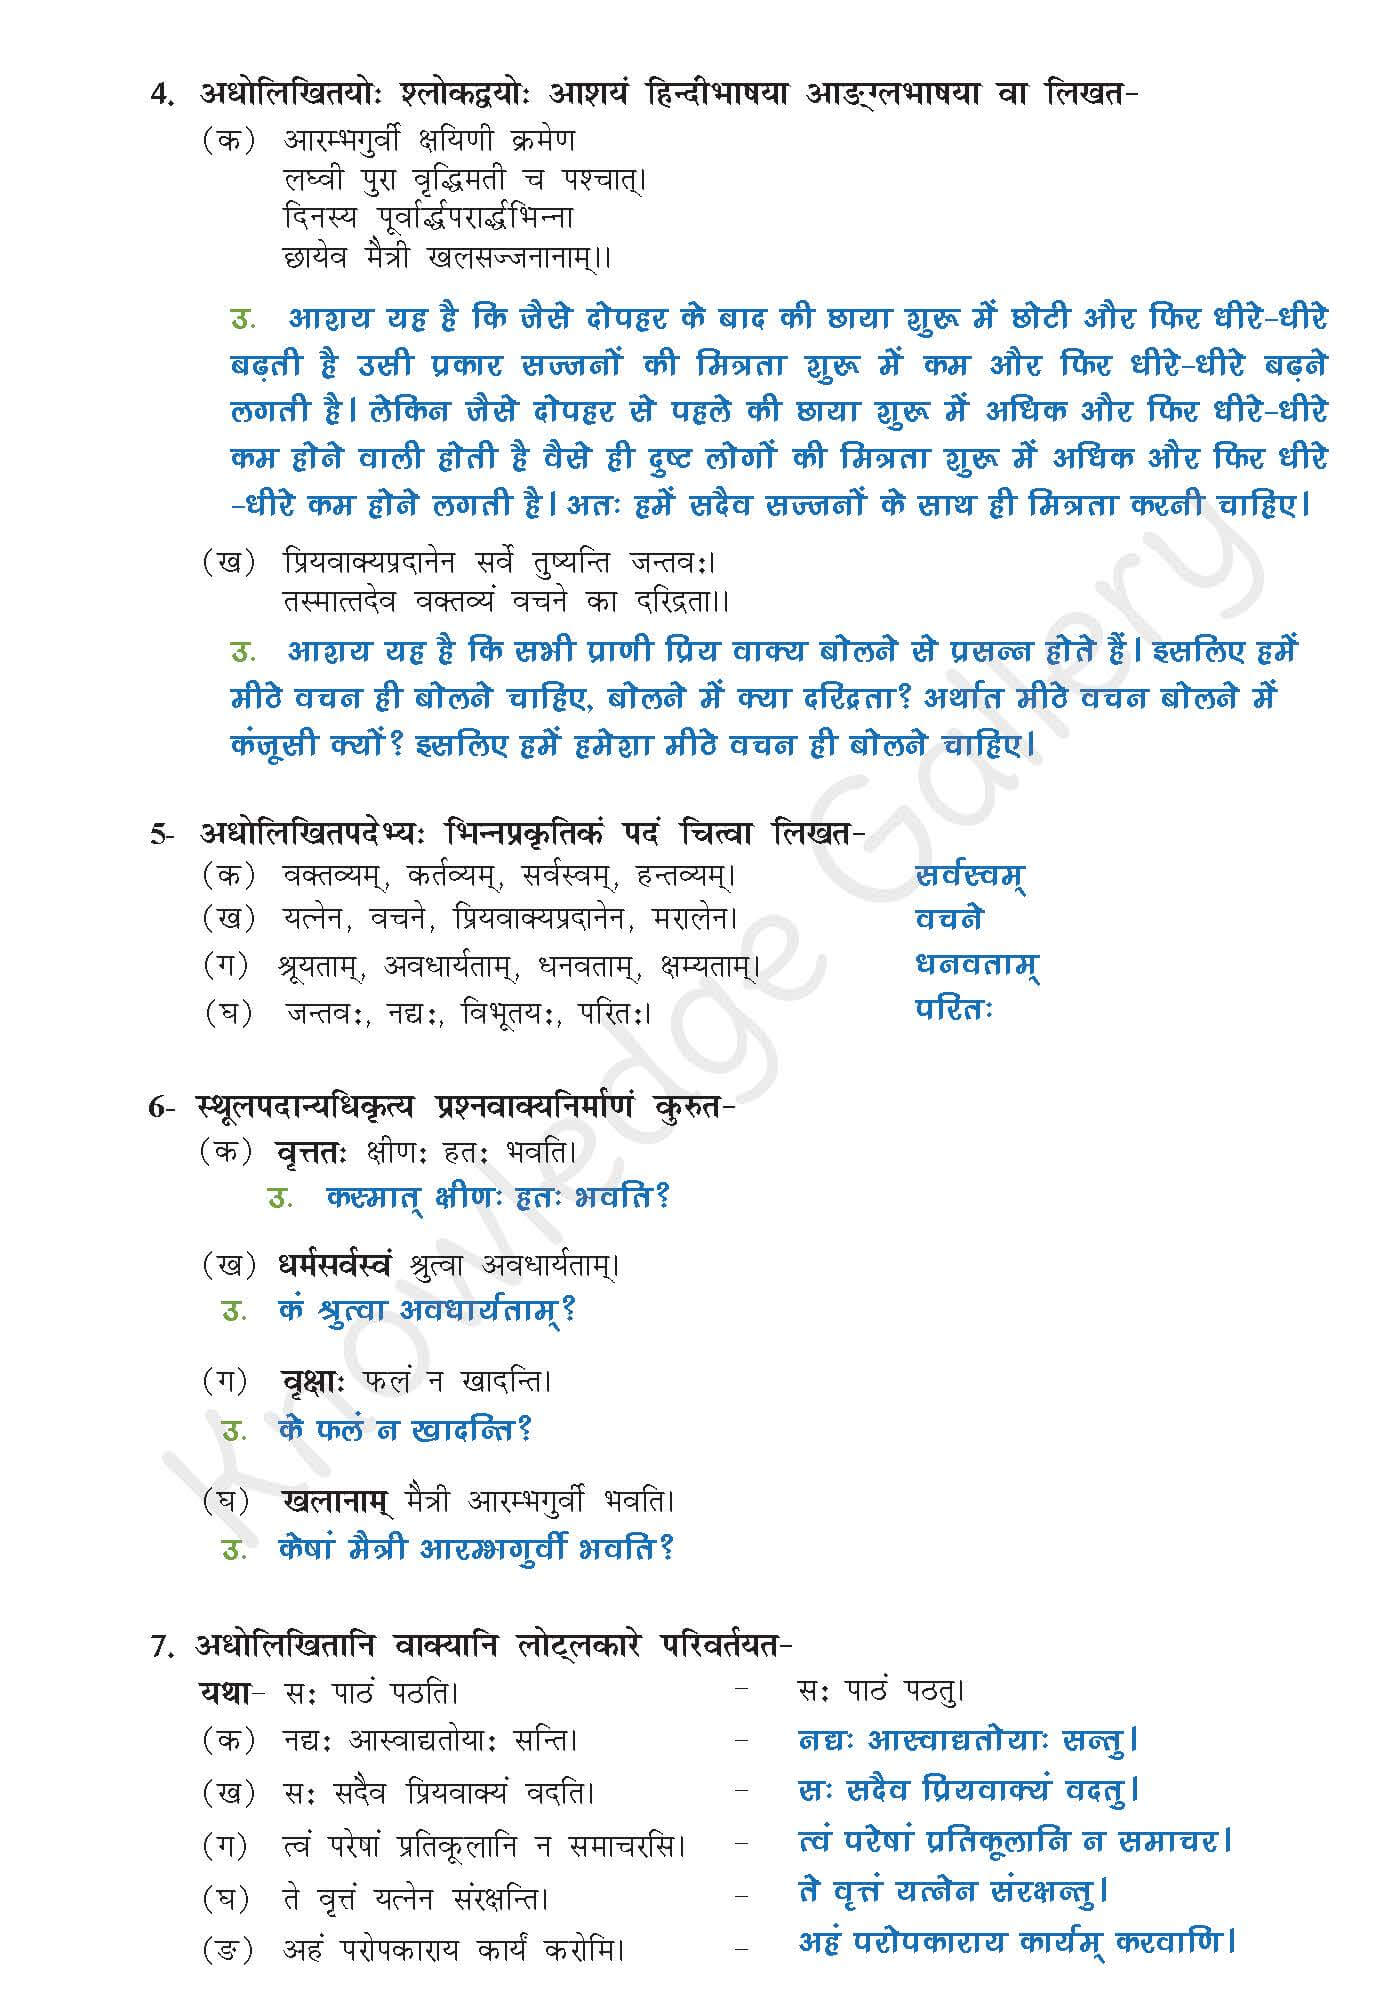 NCERT Solution For Class 9 Sanskrit Chapter 4 part 6